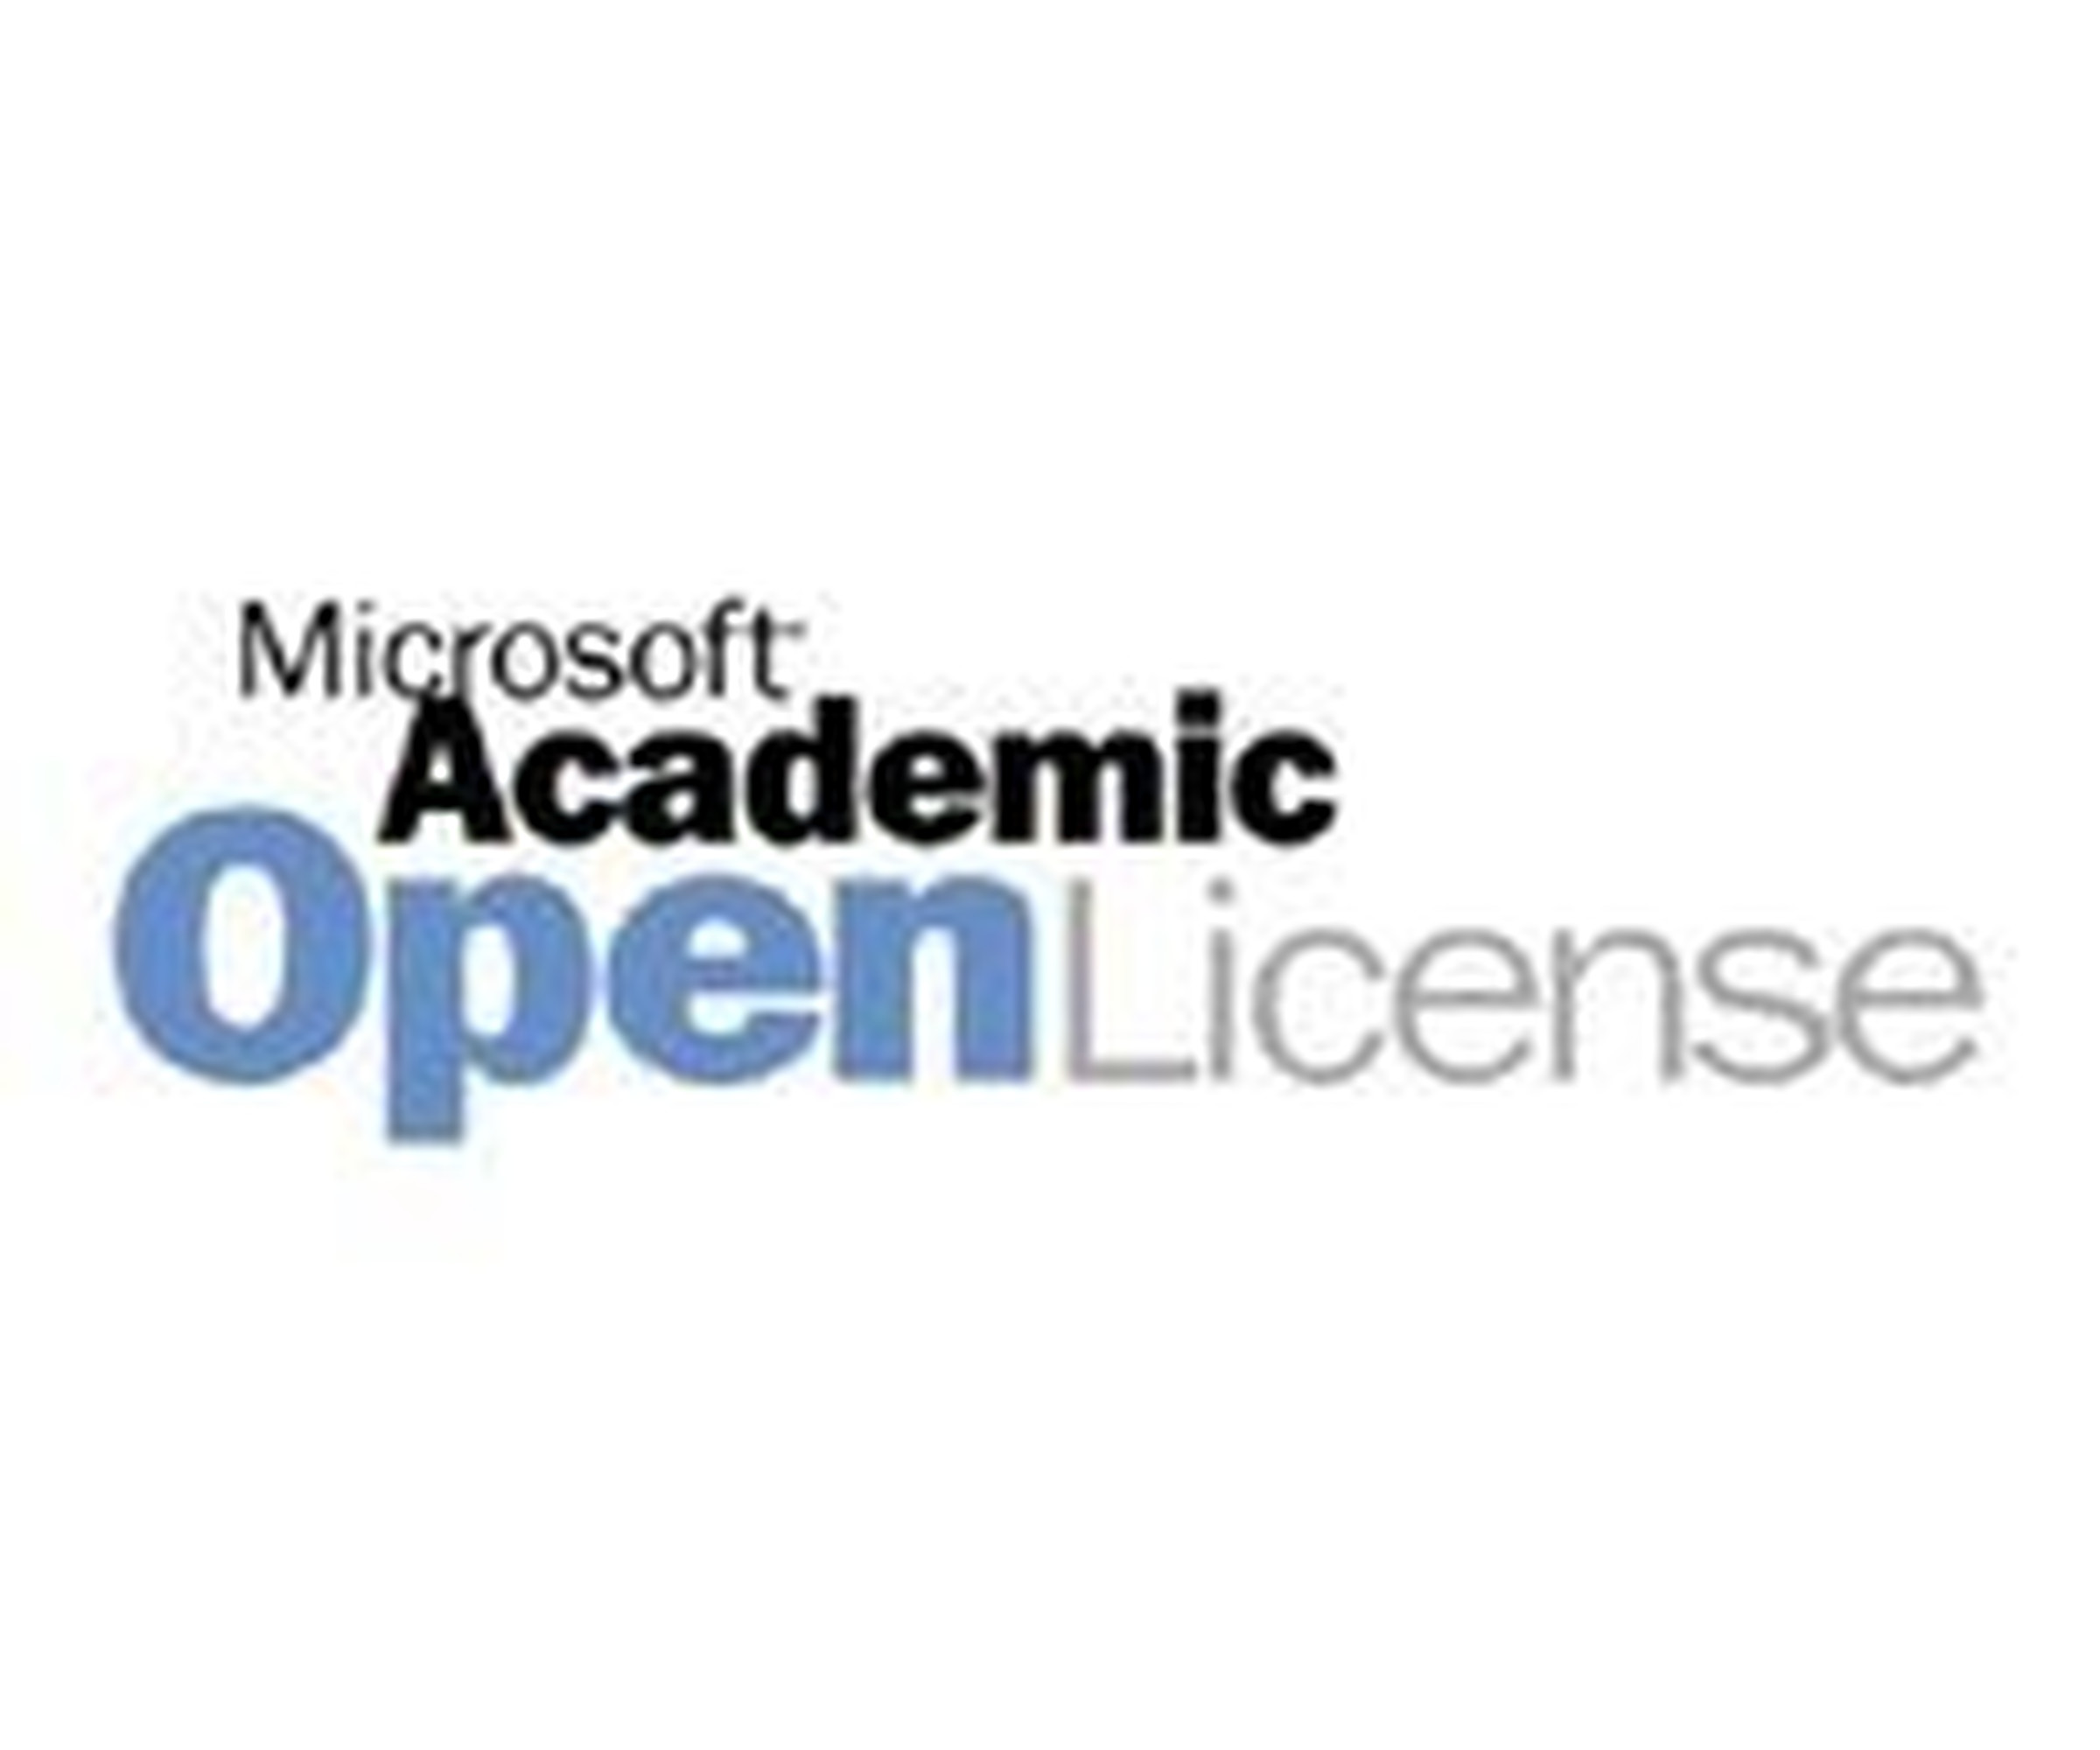 Microsoft Windows Server Datacenter Edition - Lizenz- & Softwareversicherung